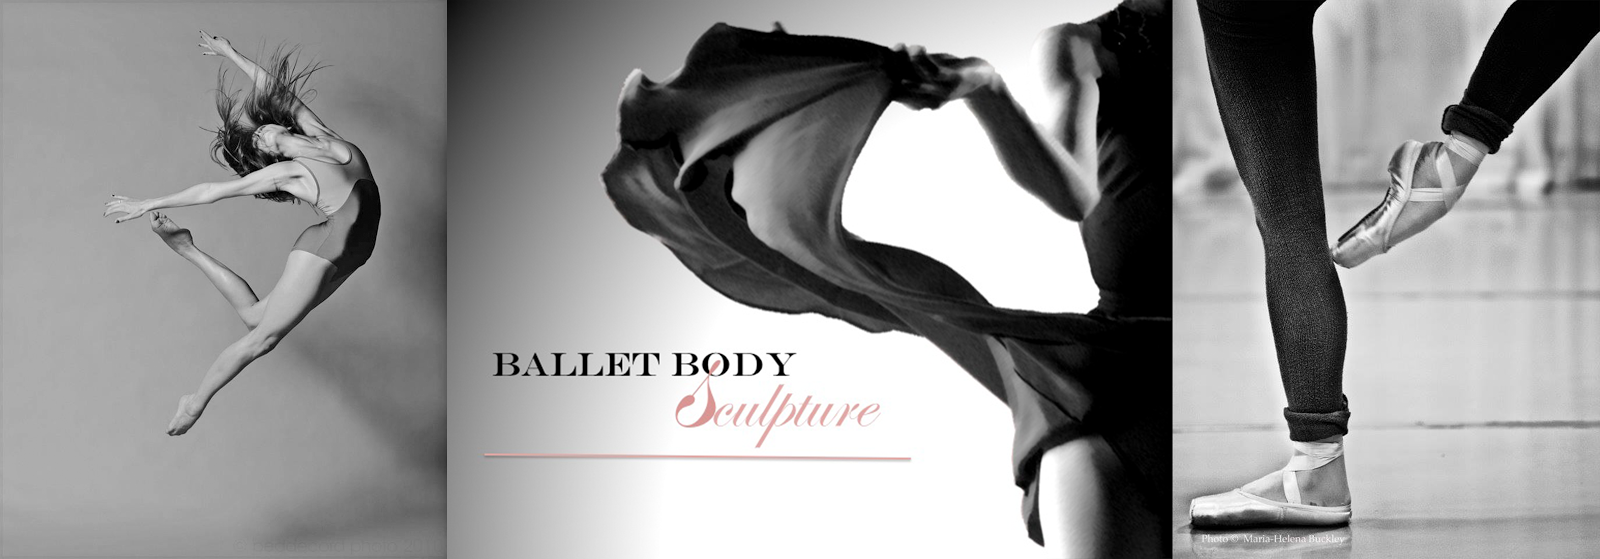 Ballet Body Sculpture